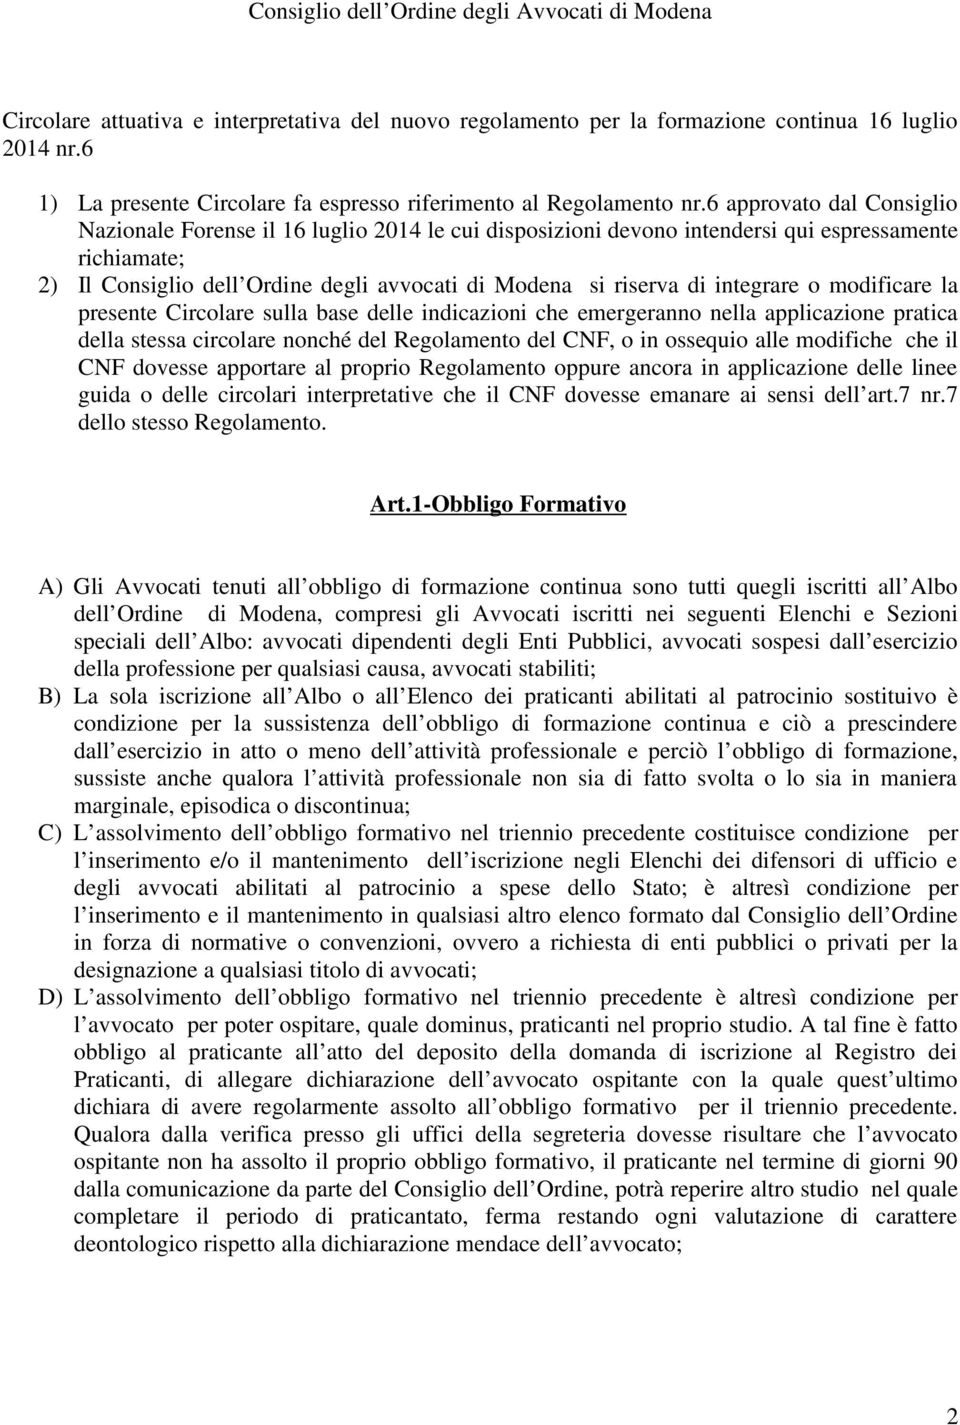 6 approvato dal Consiglio Nazionale Forense il 16 luglio 2014 le cui disposizioni devono intendersi qui espressamente richiamate; 2) Il Consiglio dell Ordine degli avvocati di Modena si riserva di